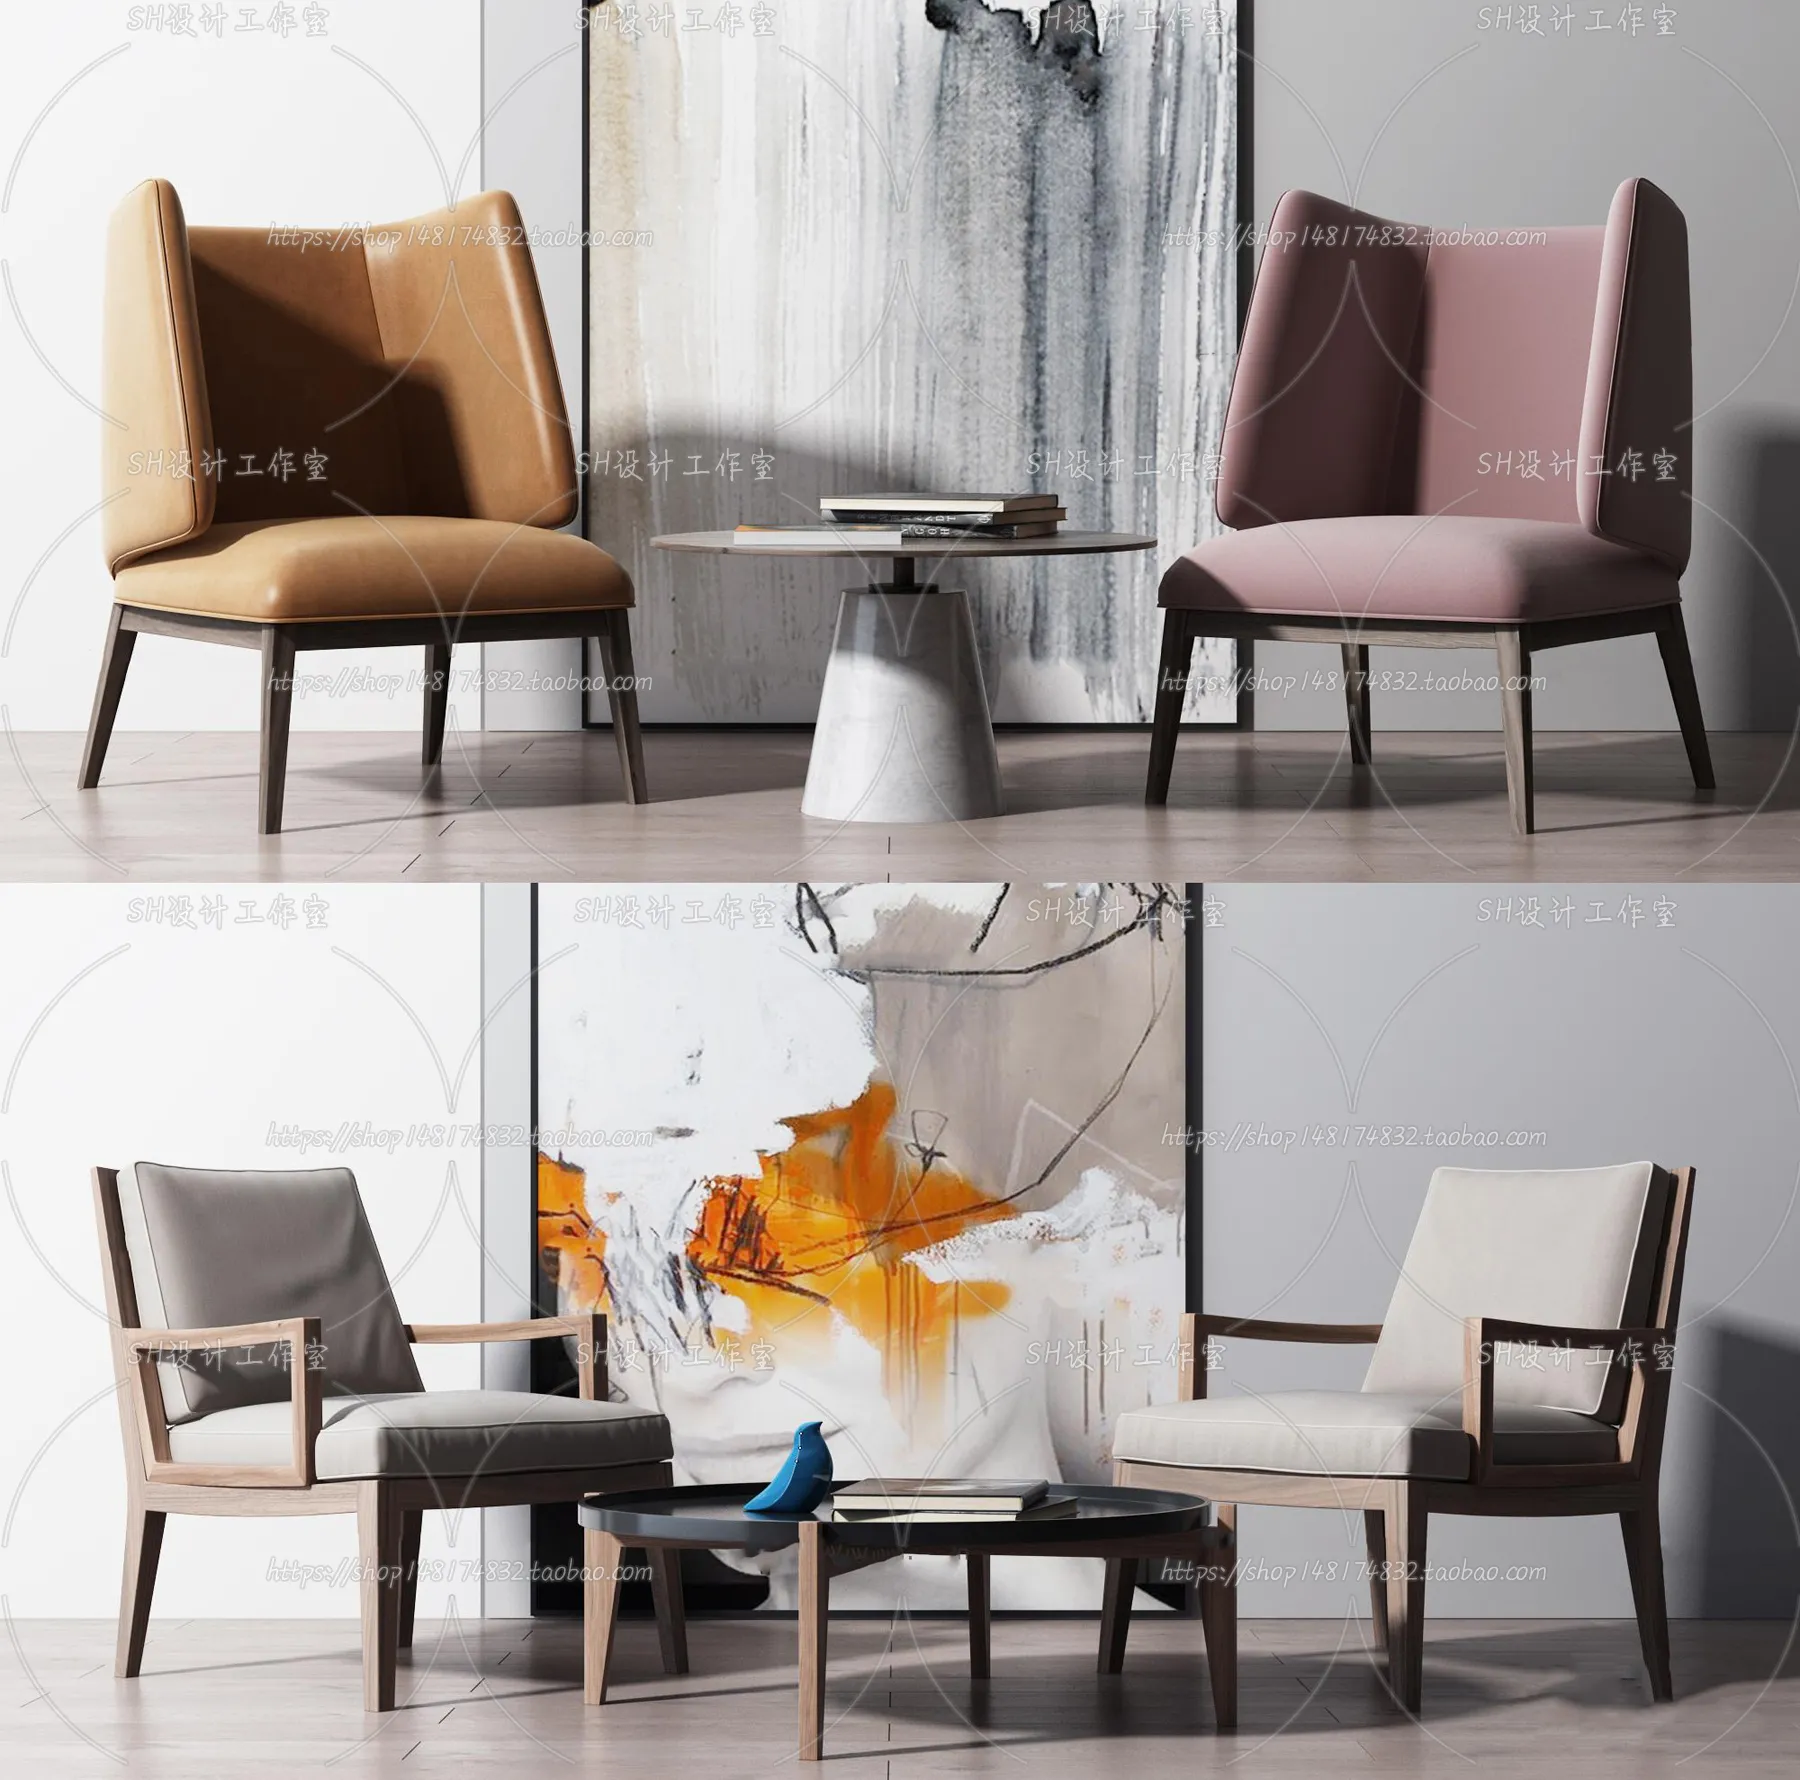 Chair – Single Chair 3D Models – 2046